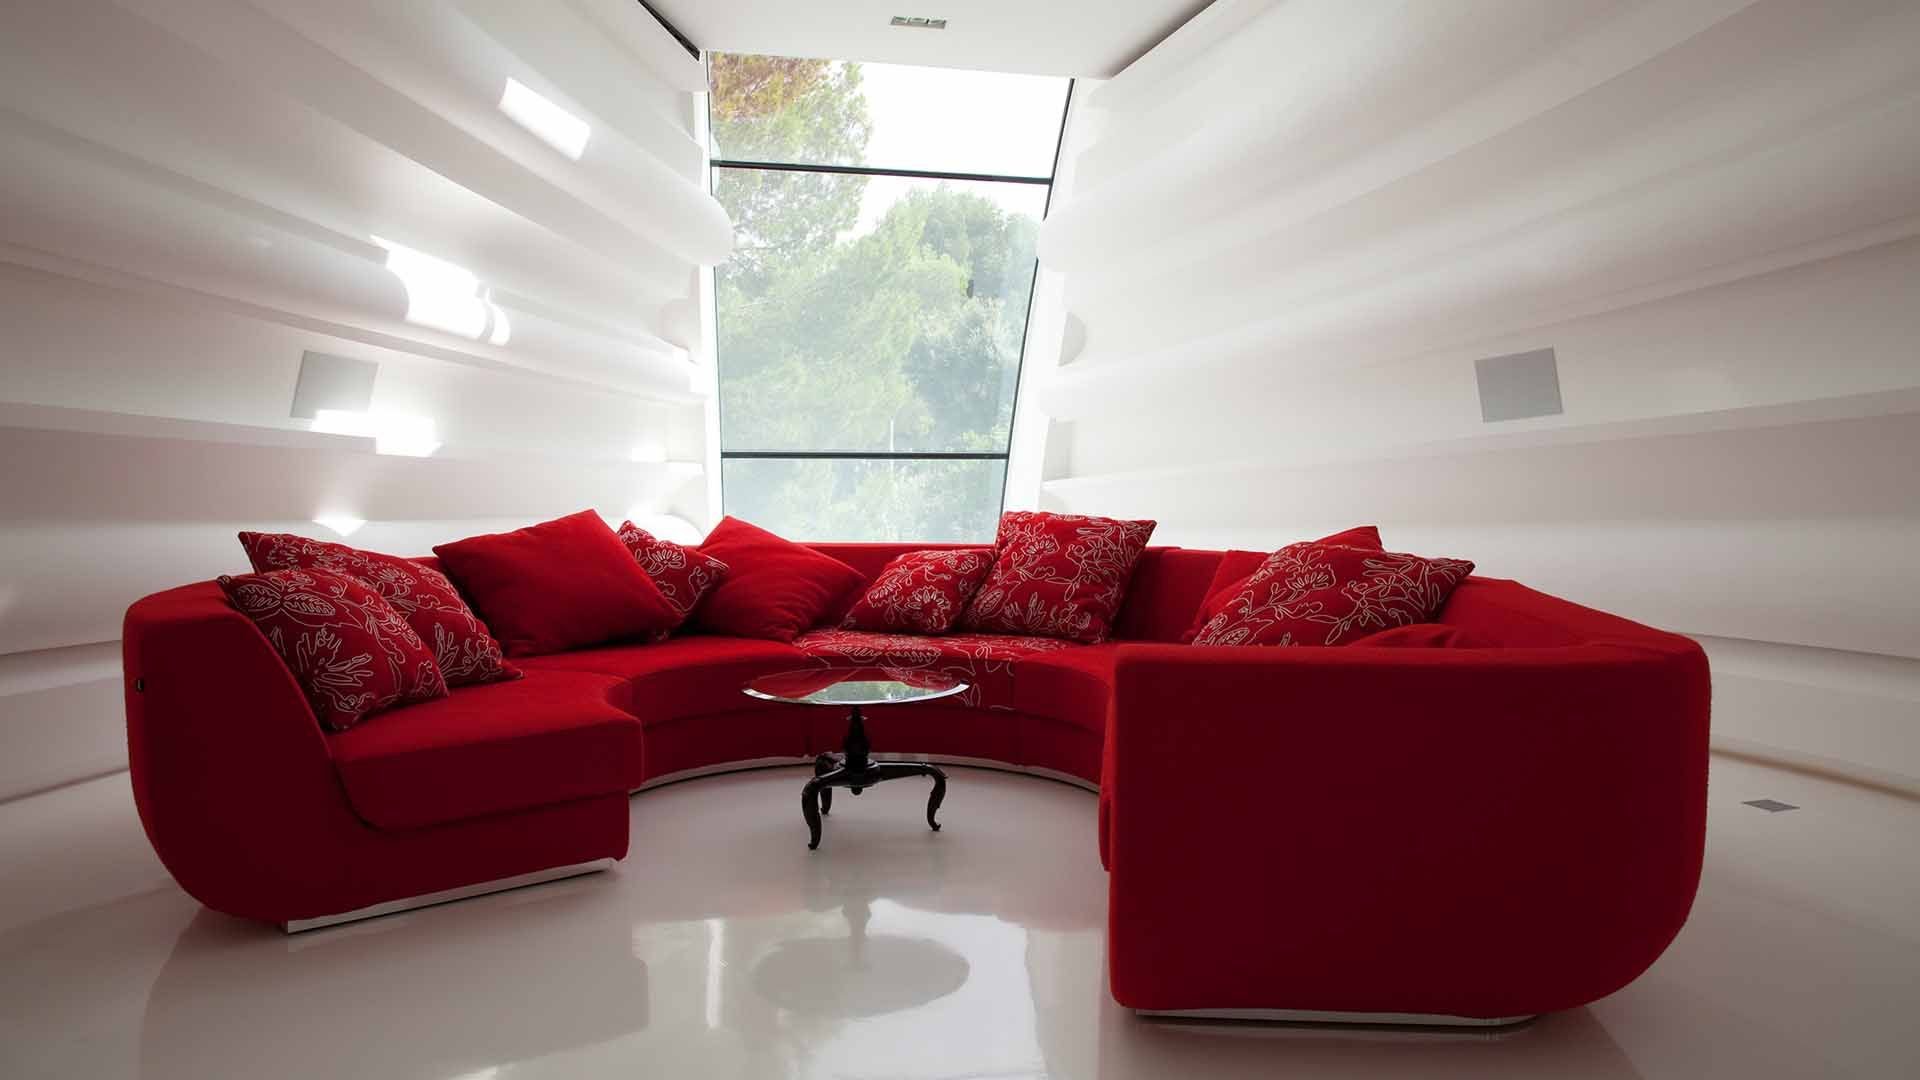 Хай диване. Красивые диваны. Красивый диван в интерьере. Красный диван. Необычные диваны в интерьере.